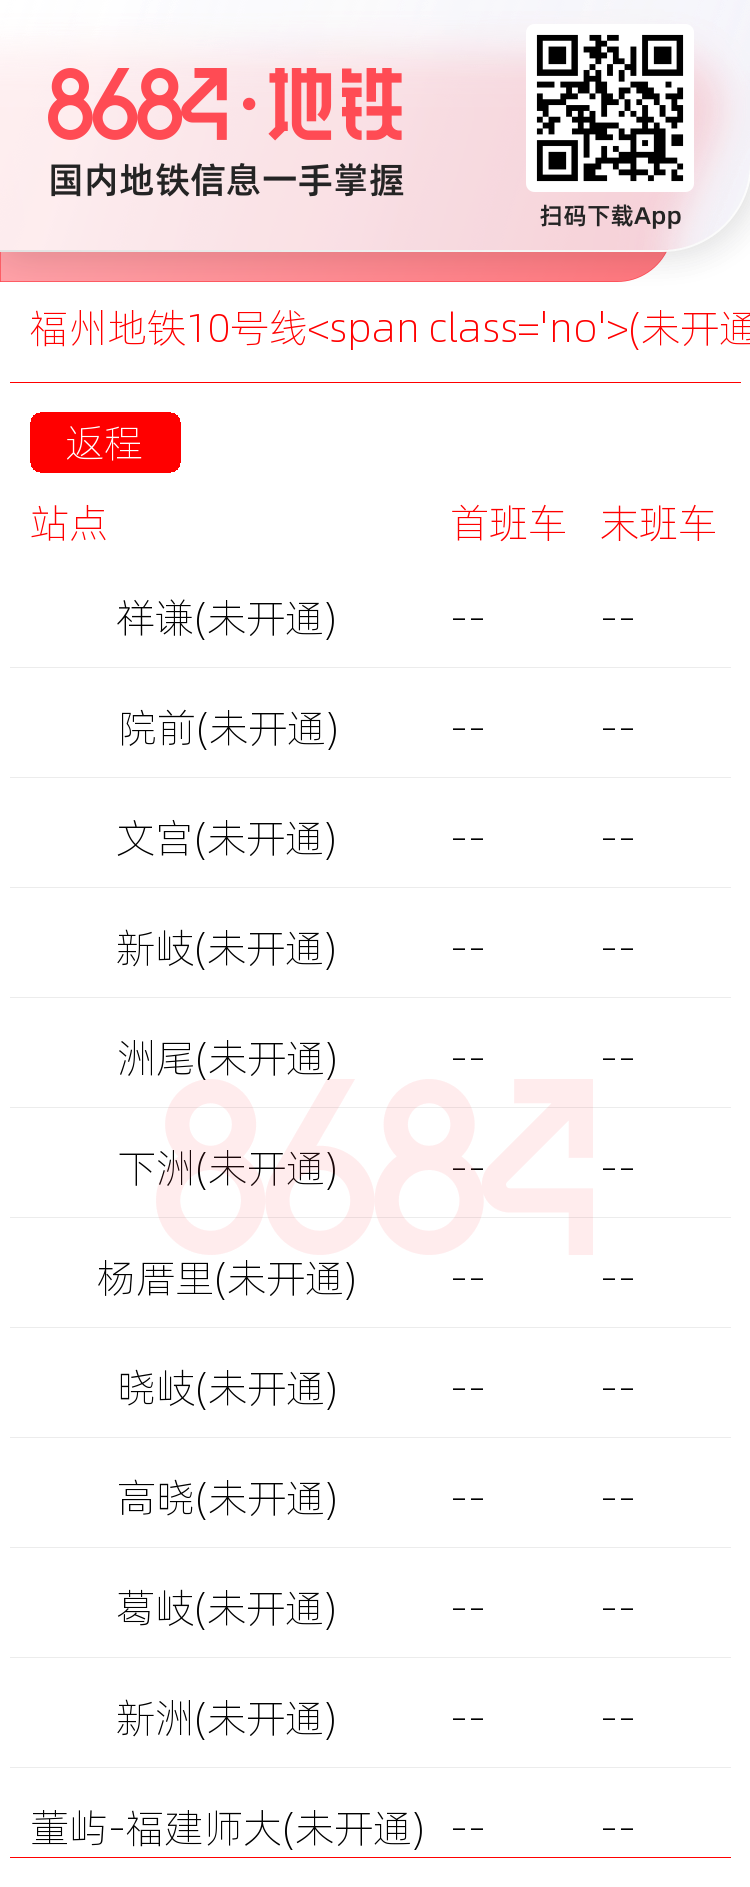 福州地铁10号线<span class='no'>(未开通)</span>运营时间表